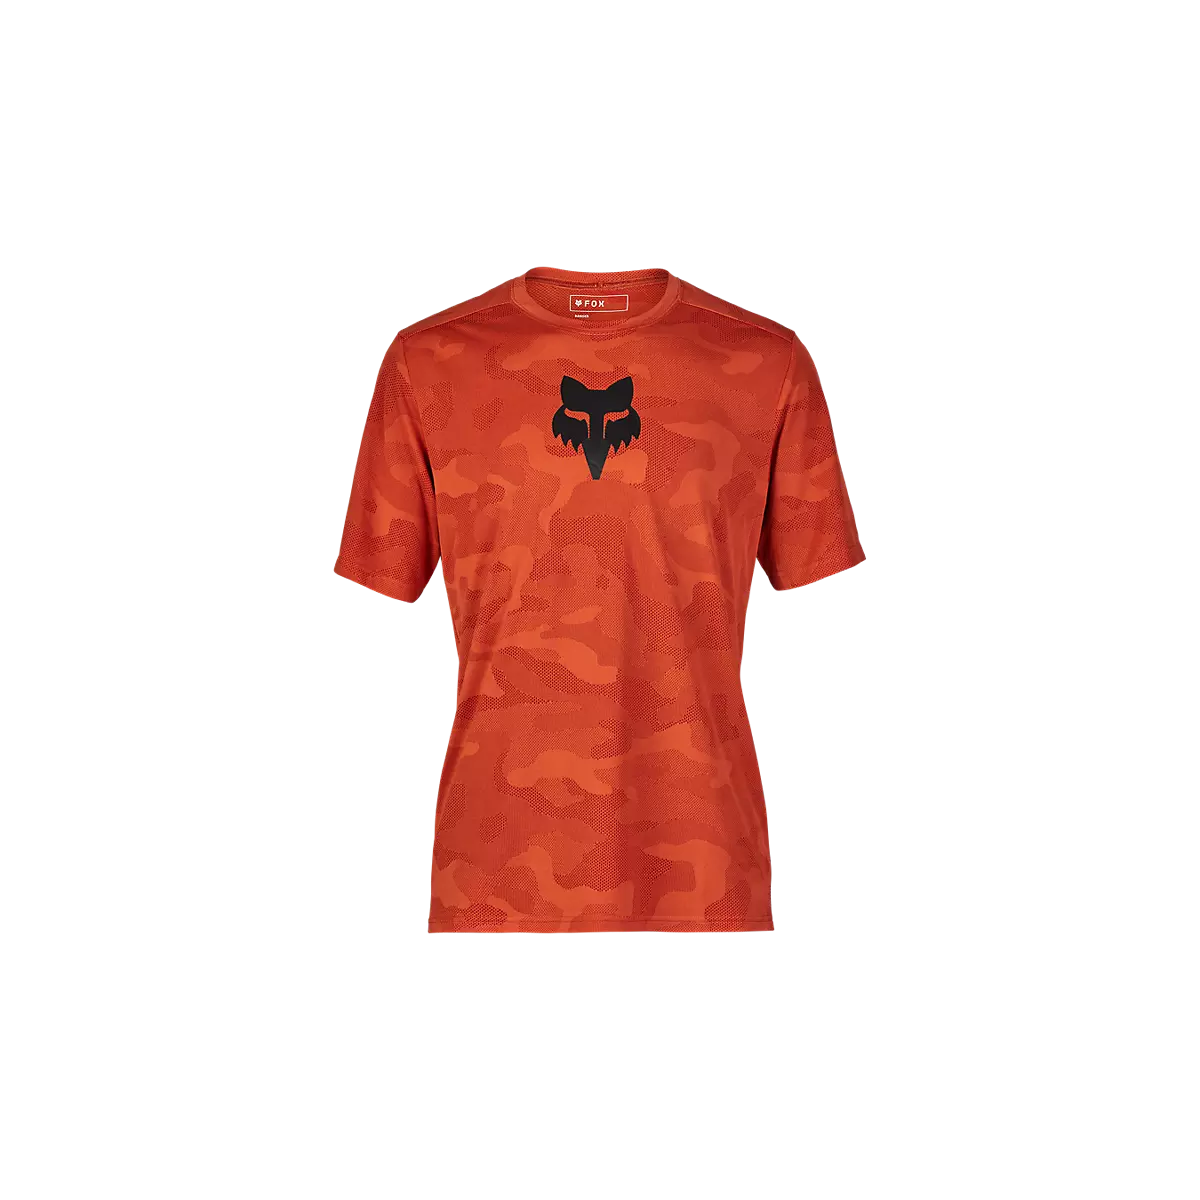 Camiseta técnica de manga corta Fox Ranger Tru Dri disponible en varios colores y tallas.